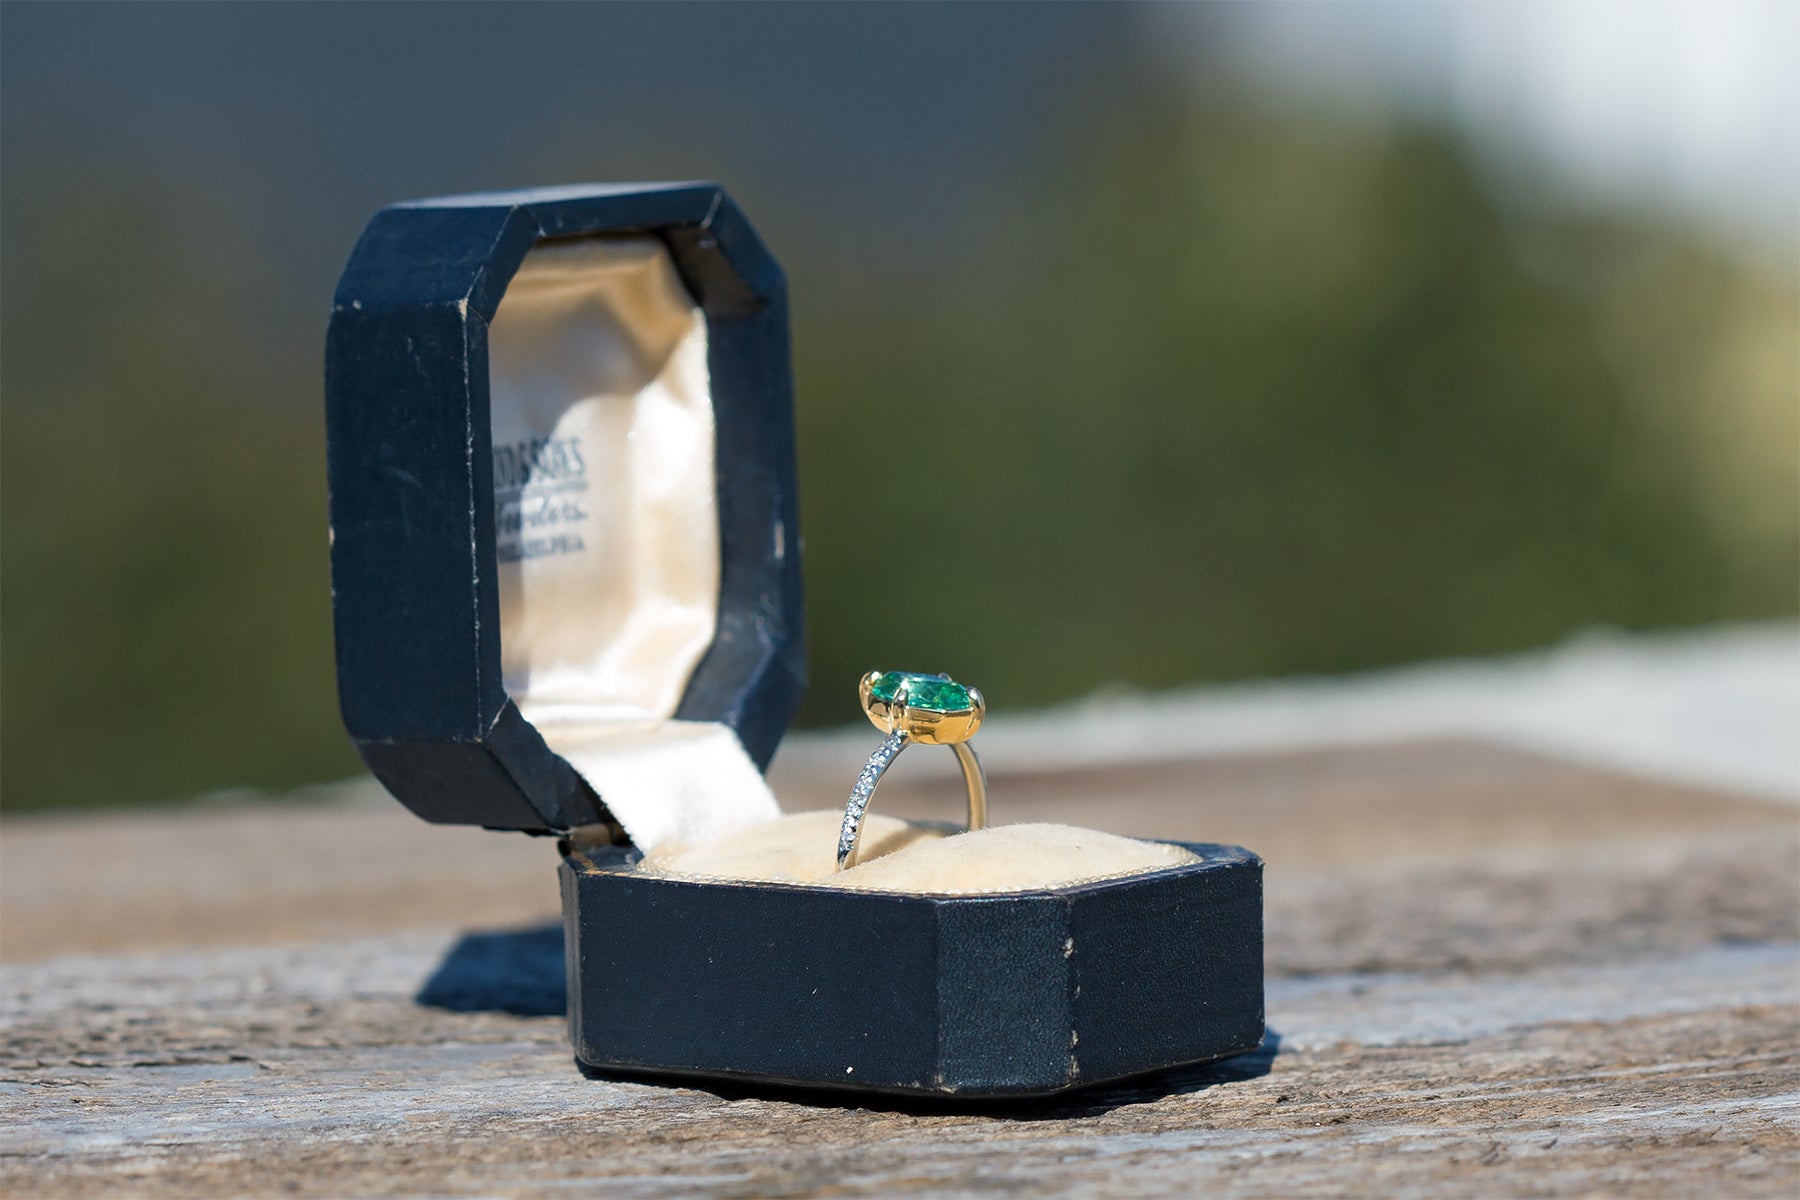 American Precision Cut Zambian Emerald Ring - S. Kind & Co